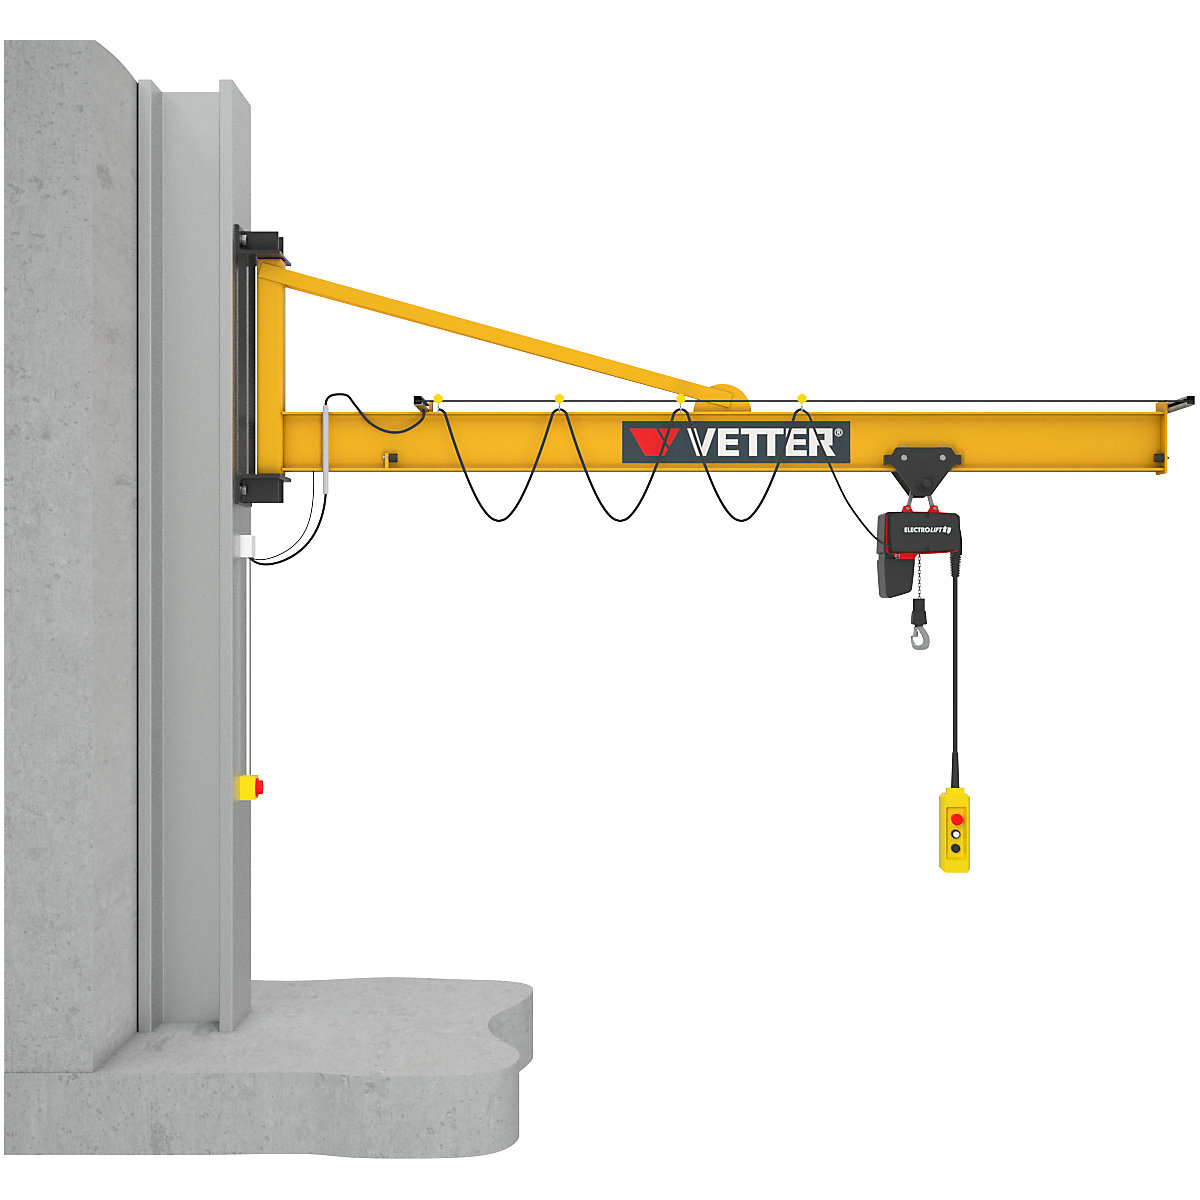 PRAKTIKUS PW wall mounted jib crane – Vetter